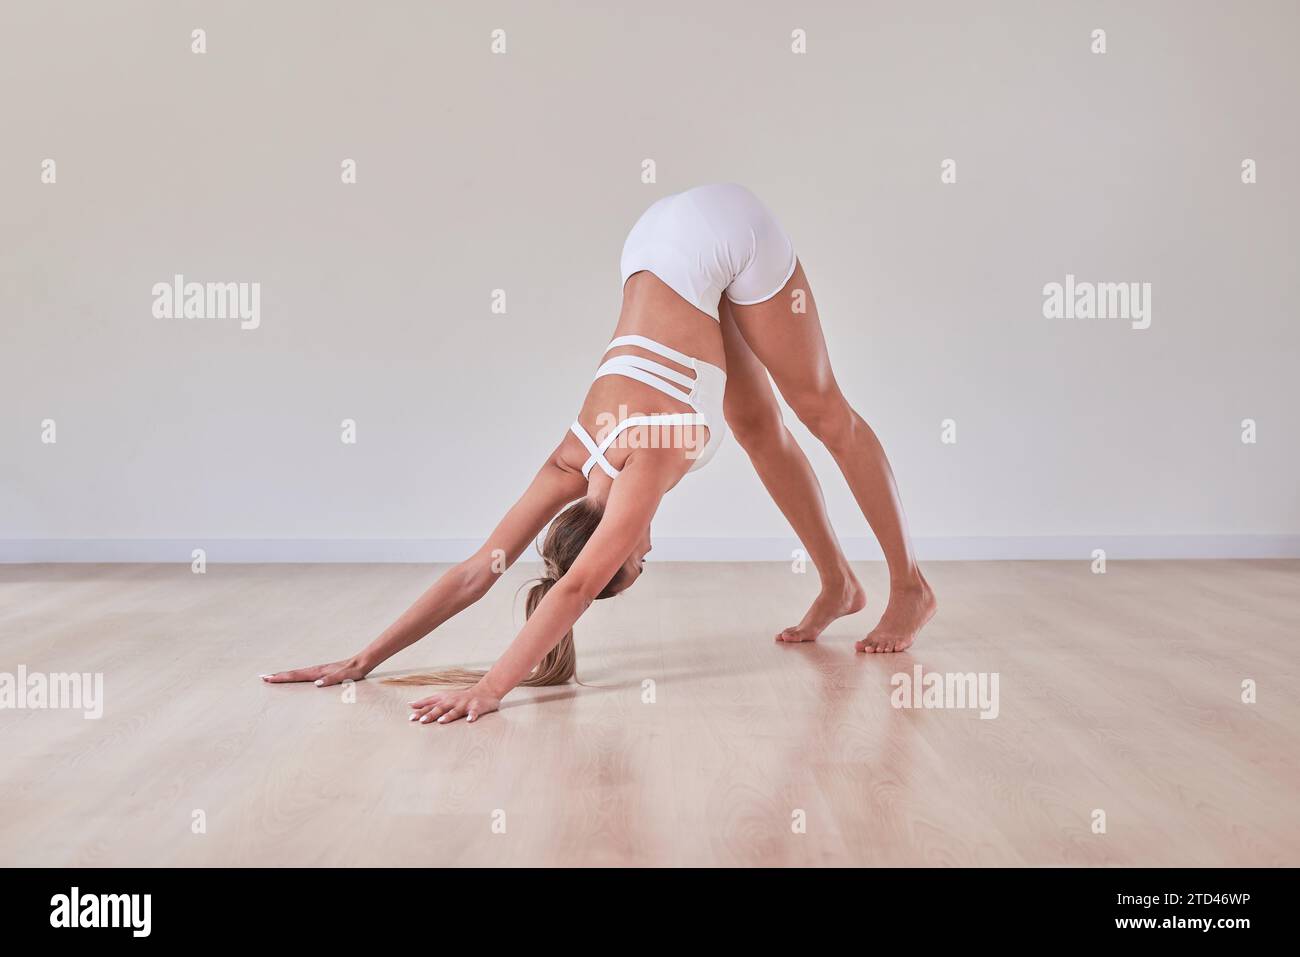 La donna flessibile si sta allenando in uno studio di illuminazione. Il concetto di ginnastica, stretching, Pilates. Stile di vita sano. Supporti misti Foto Stock